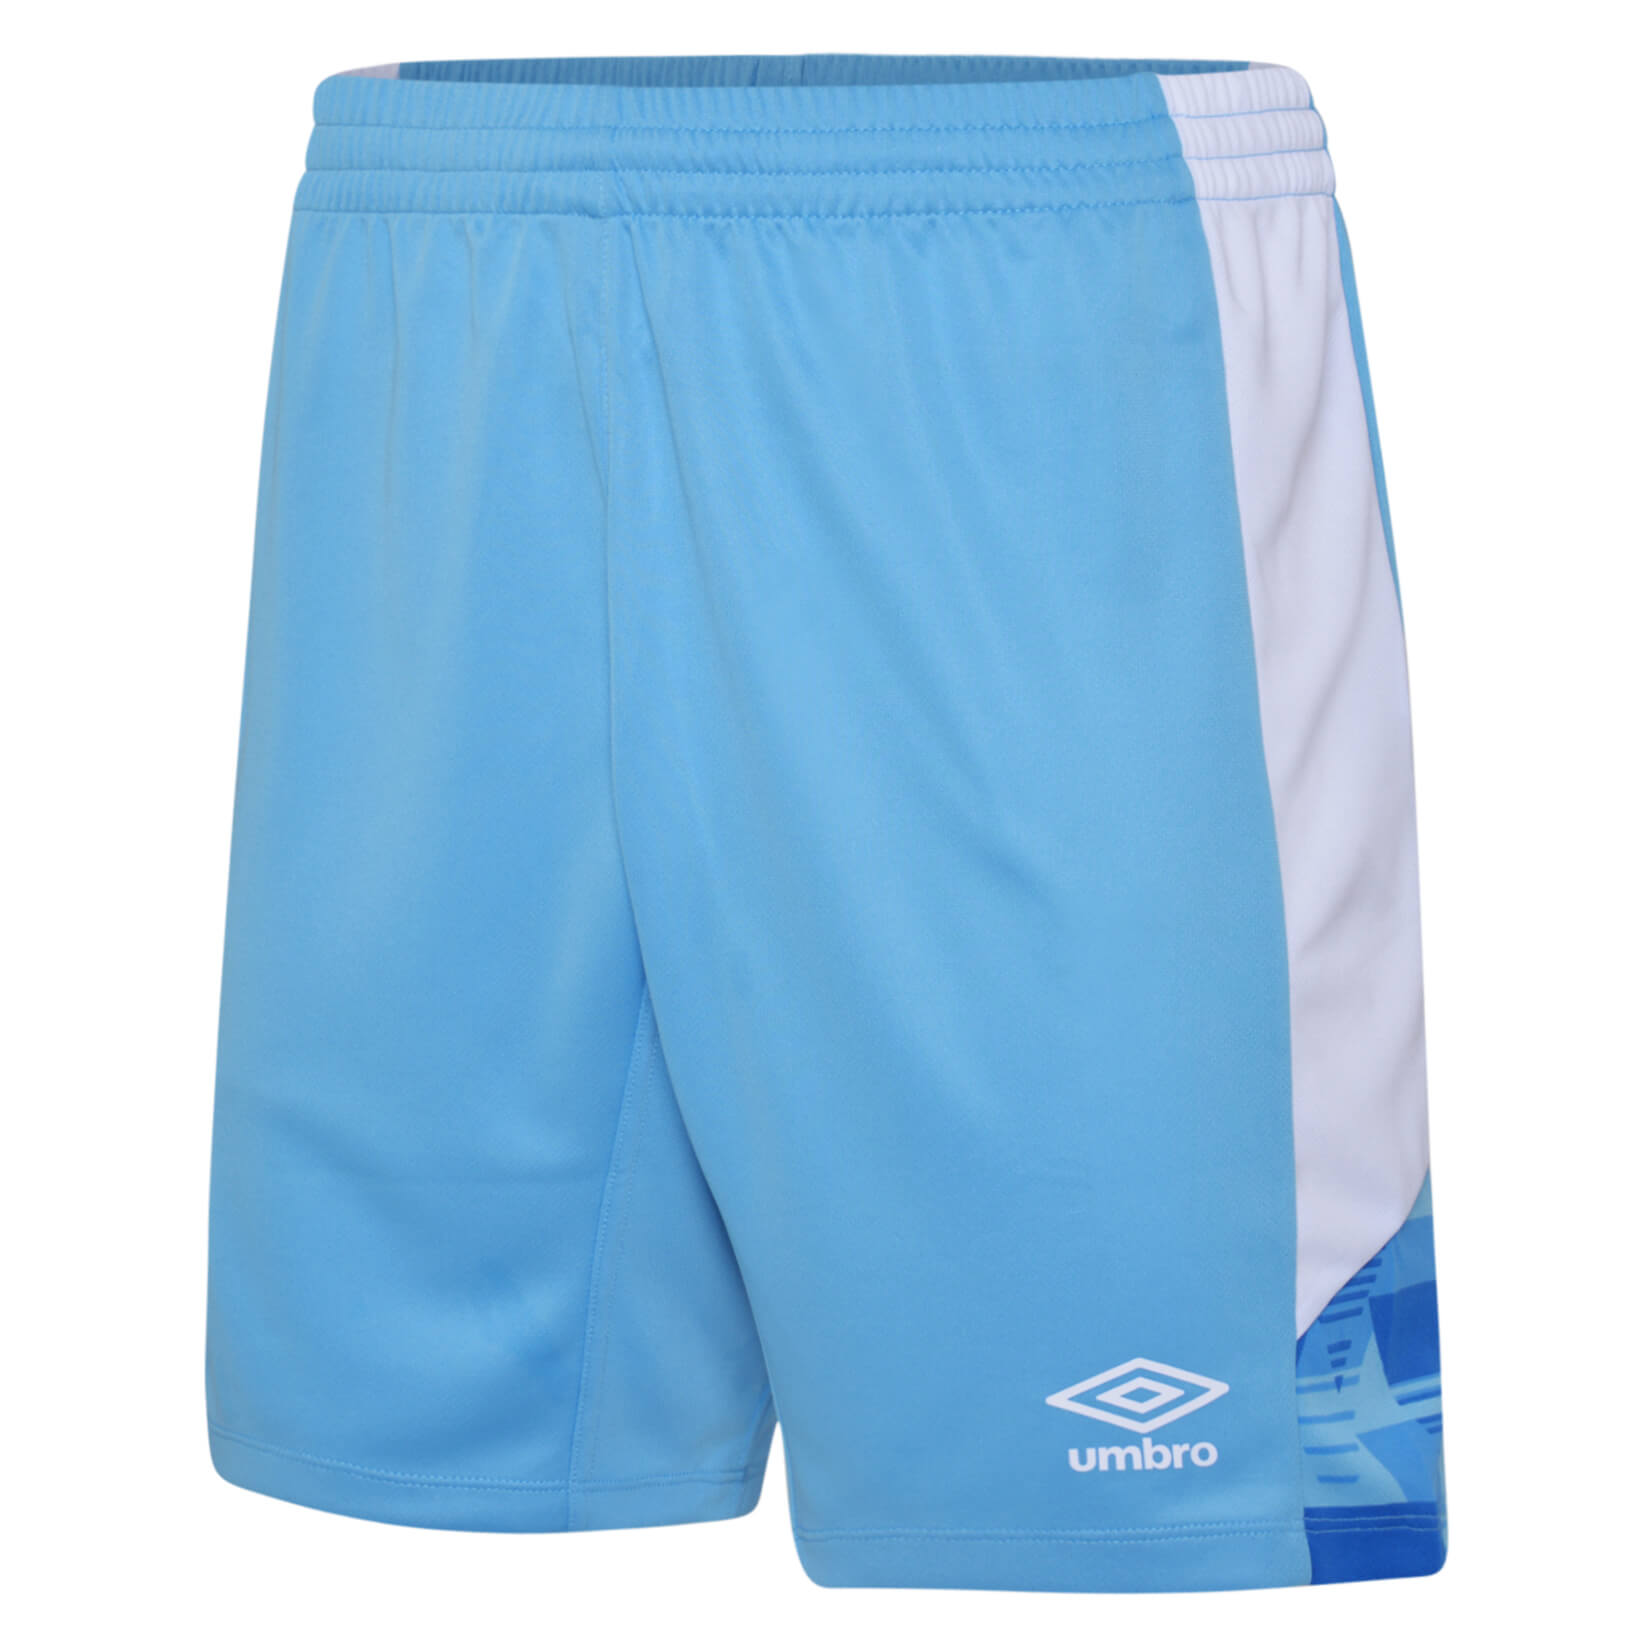 Umbro Vier Shorts - Kitlocker.com